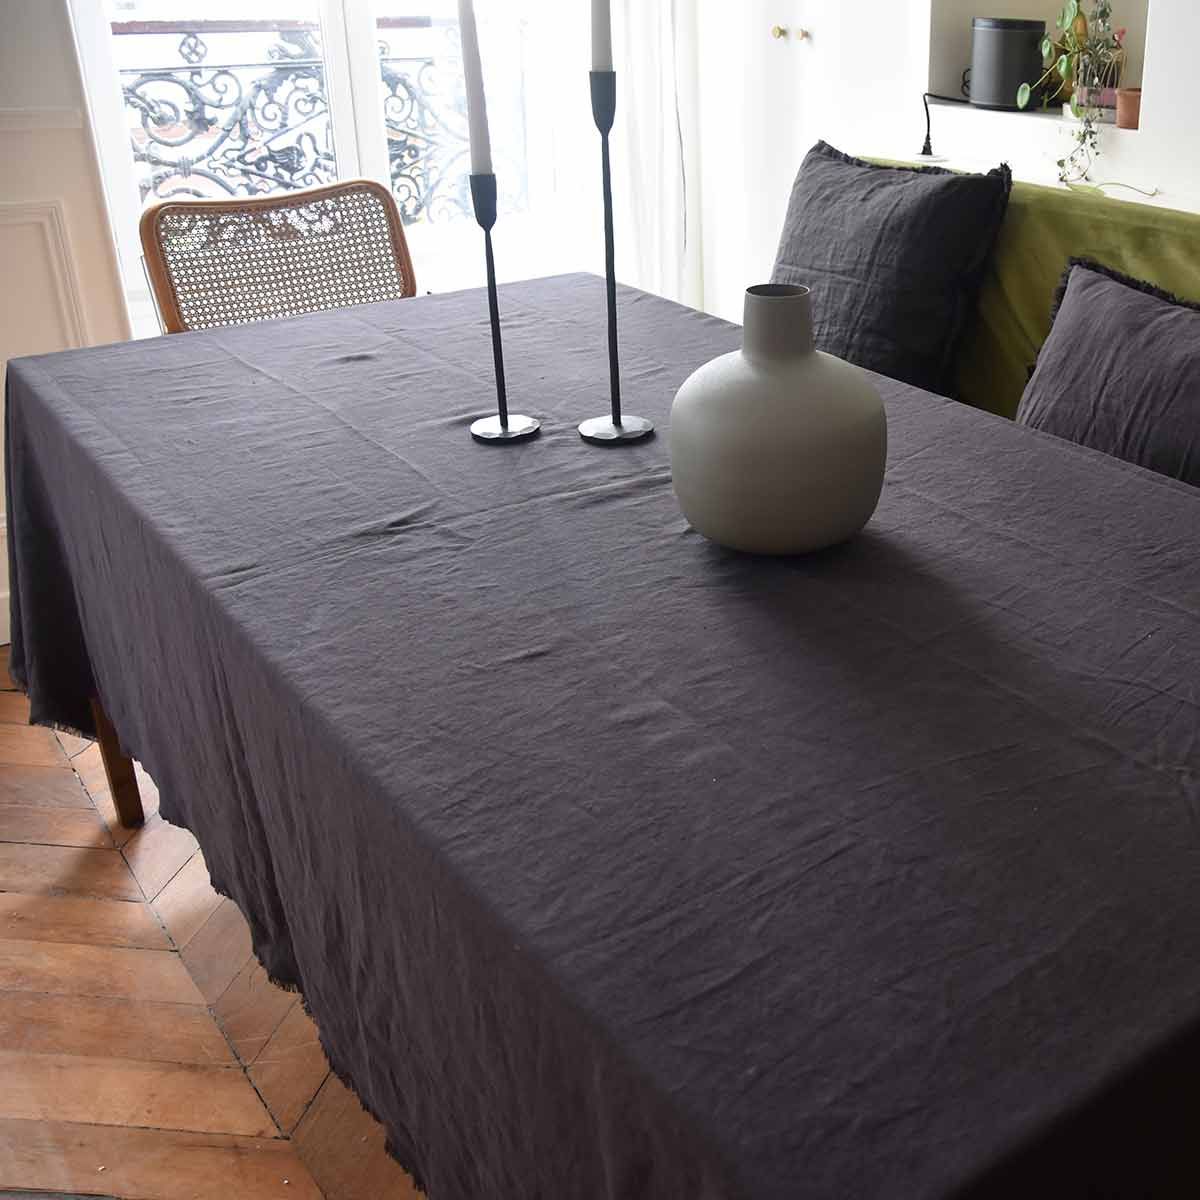 Nappe ou rideau en lin lavé blanc surjet charbon Oslo – Decoclico